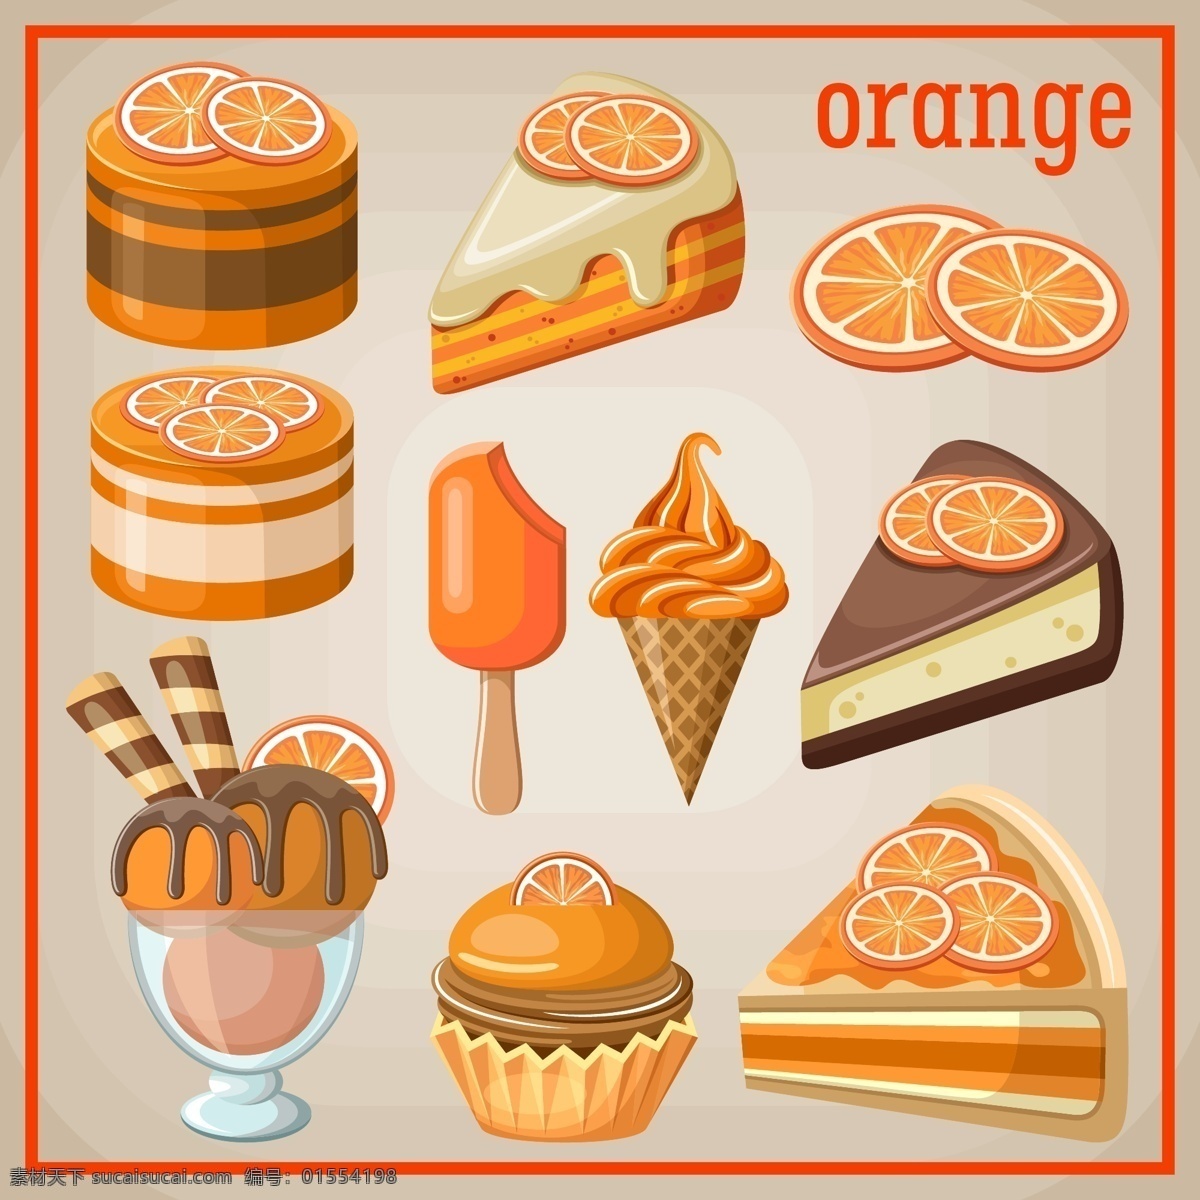 水果 橙子 甜品 插画 蛋糕 桔子 冰淇淋 三角蛋糕 美味 诱人